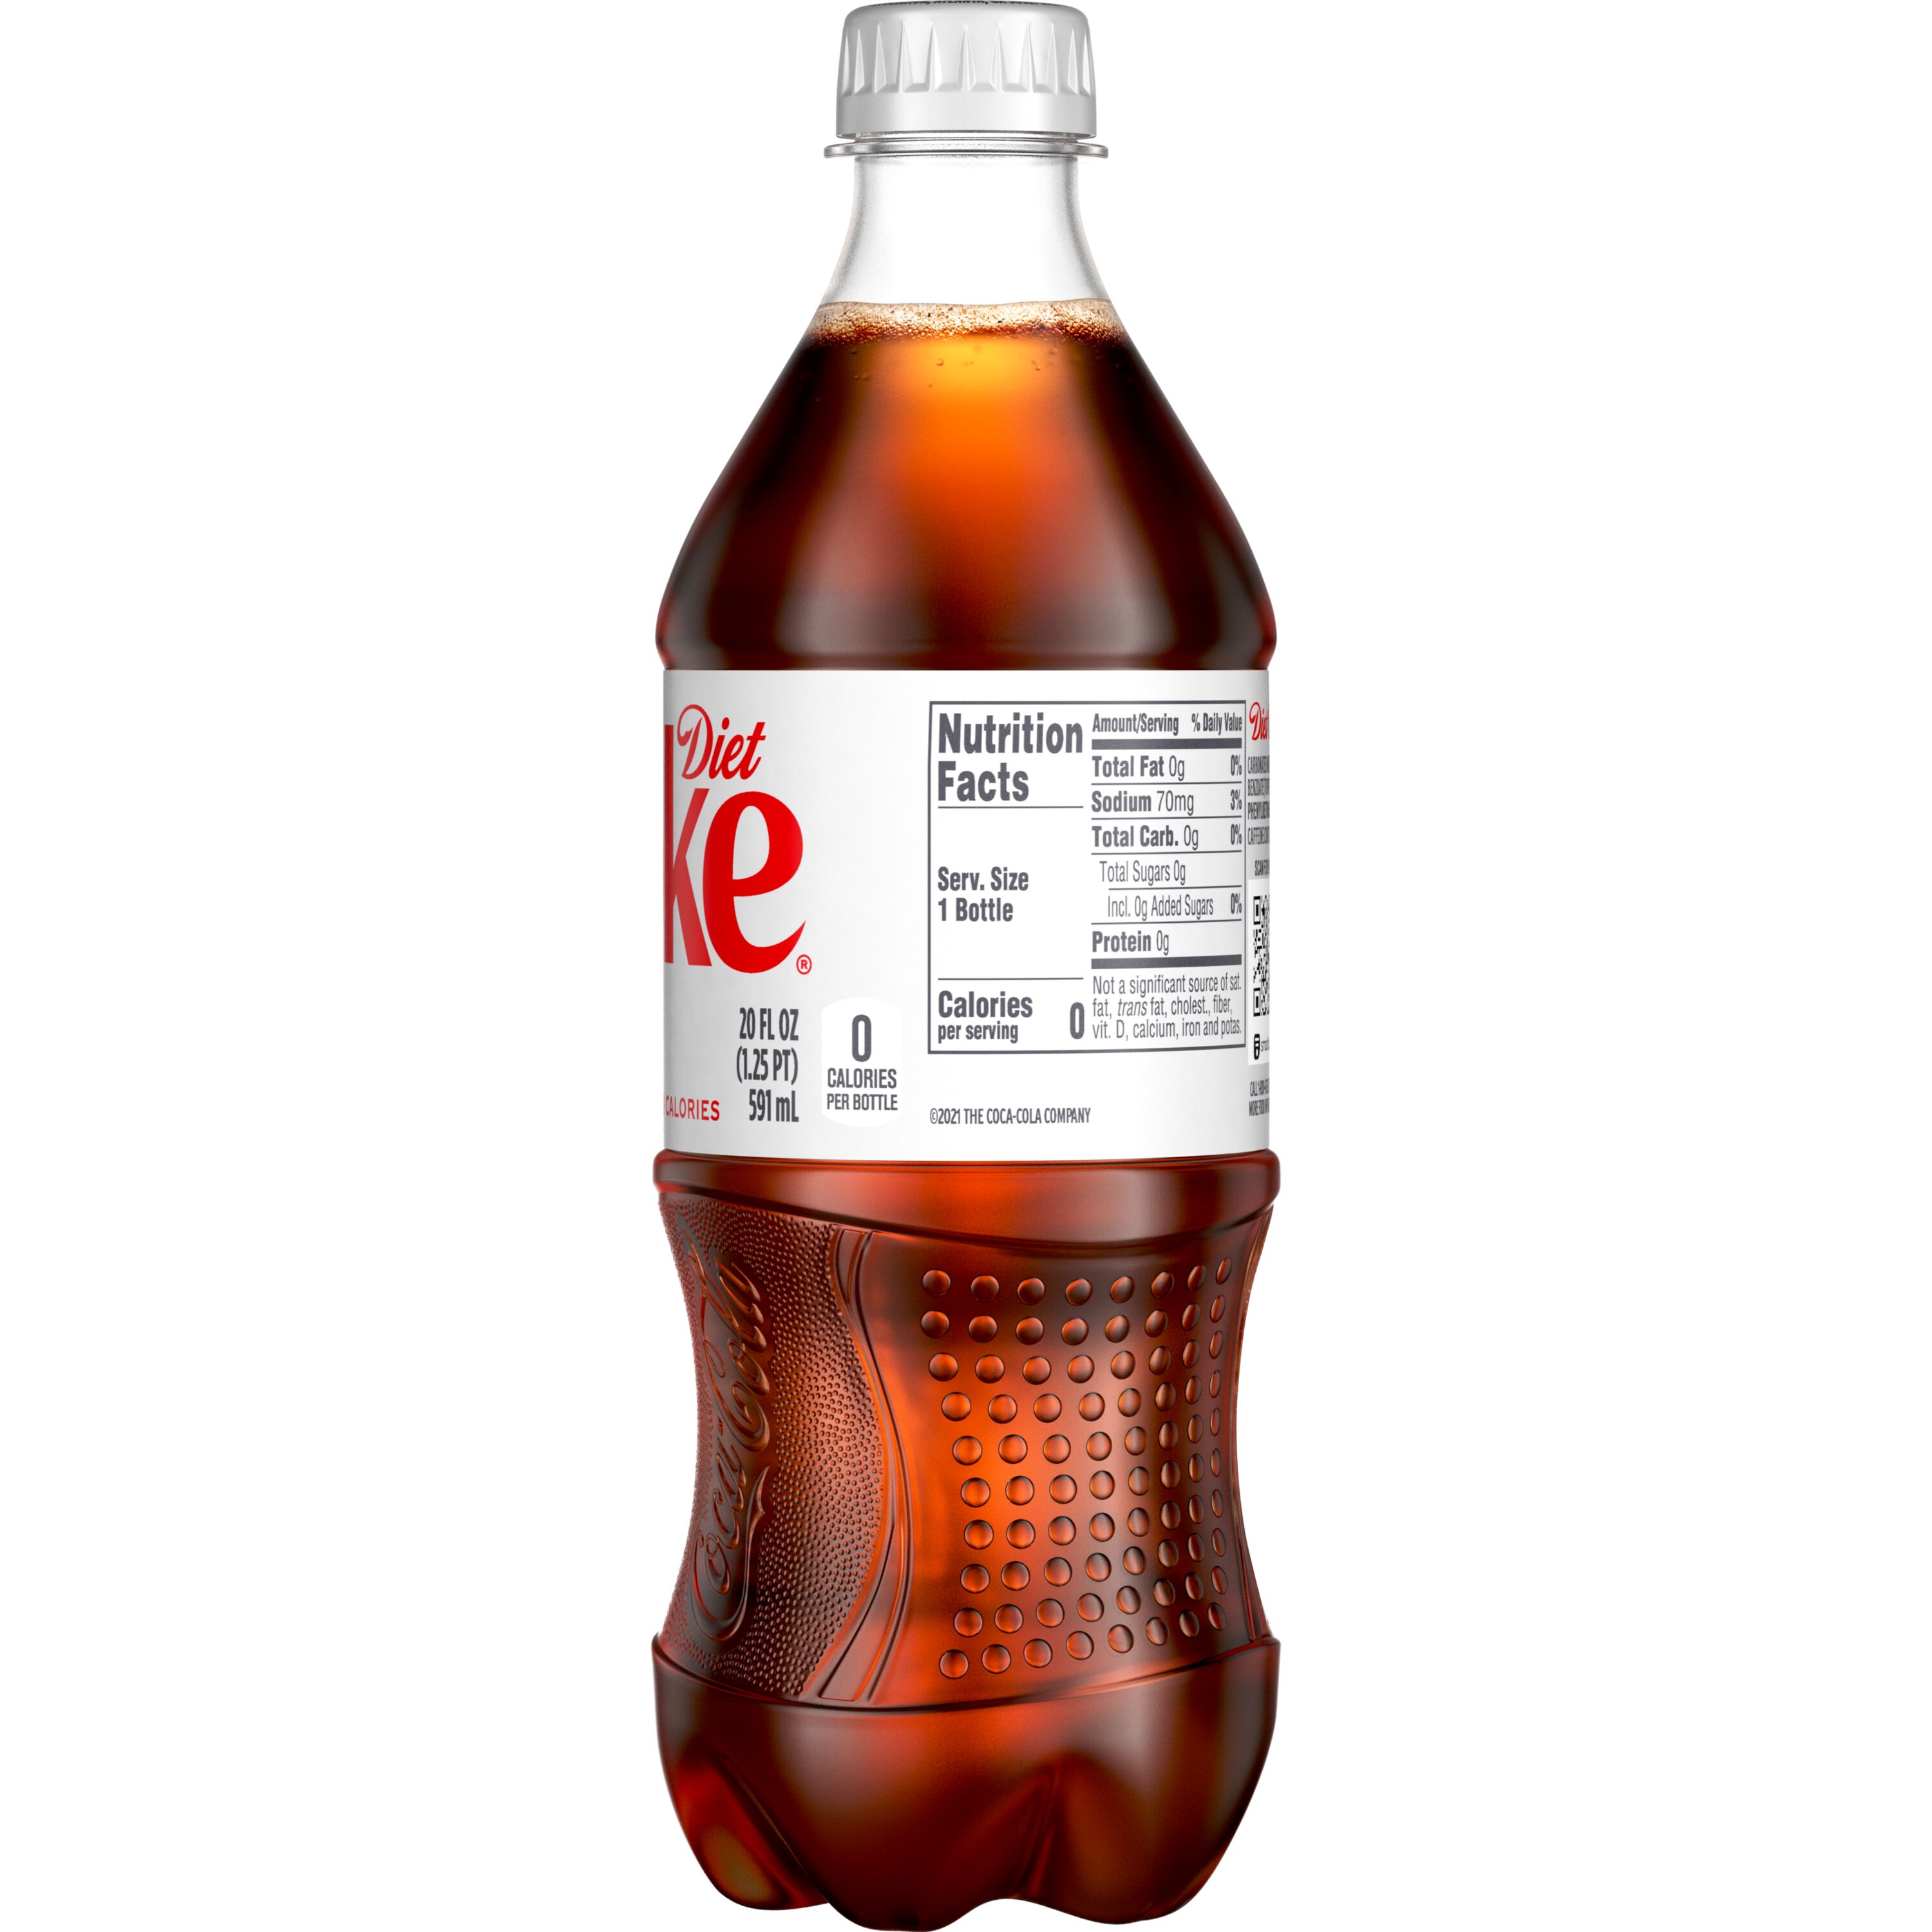 Coca-Cola Bottle, 20 fl oz